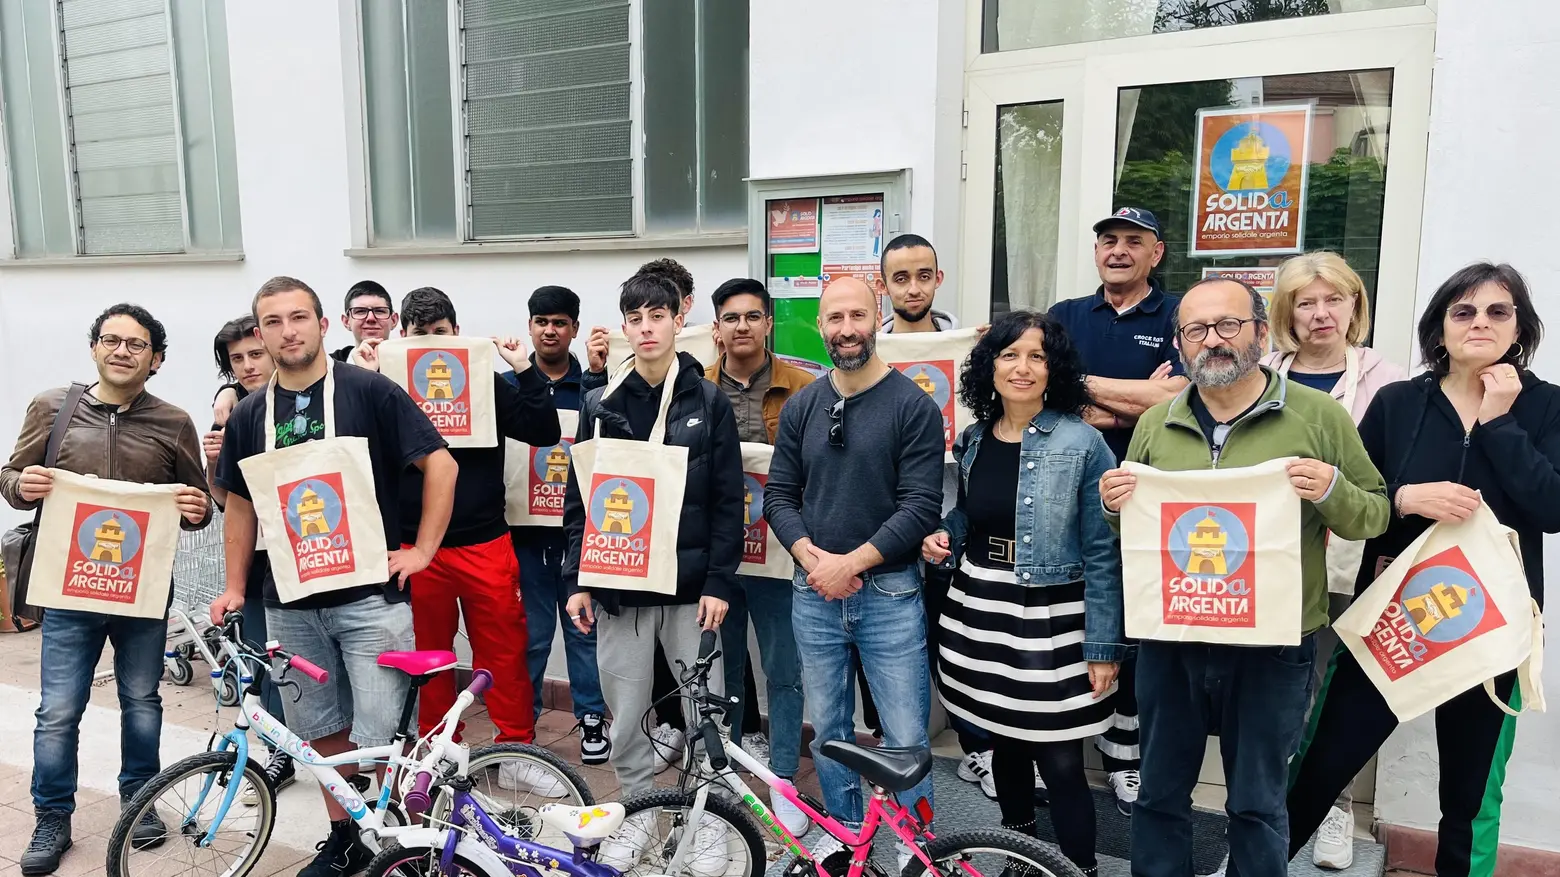 Gli studenti donano tre bici all’emporio solidale